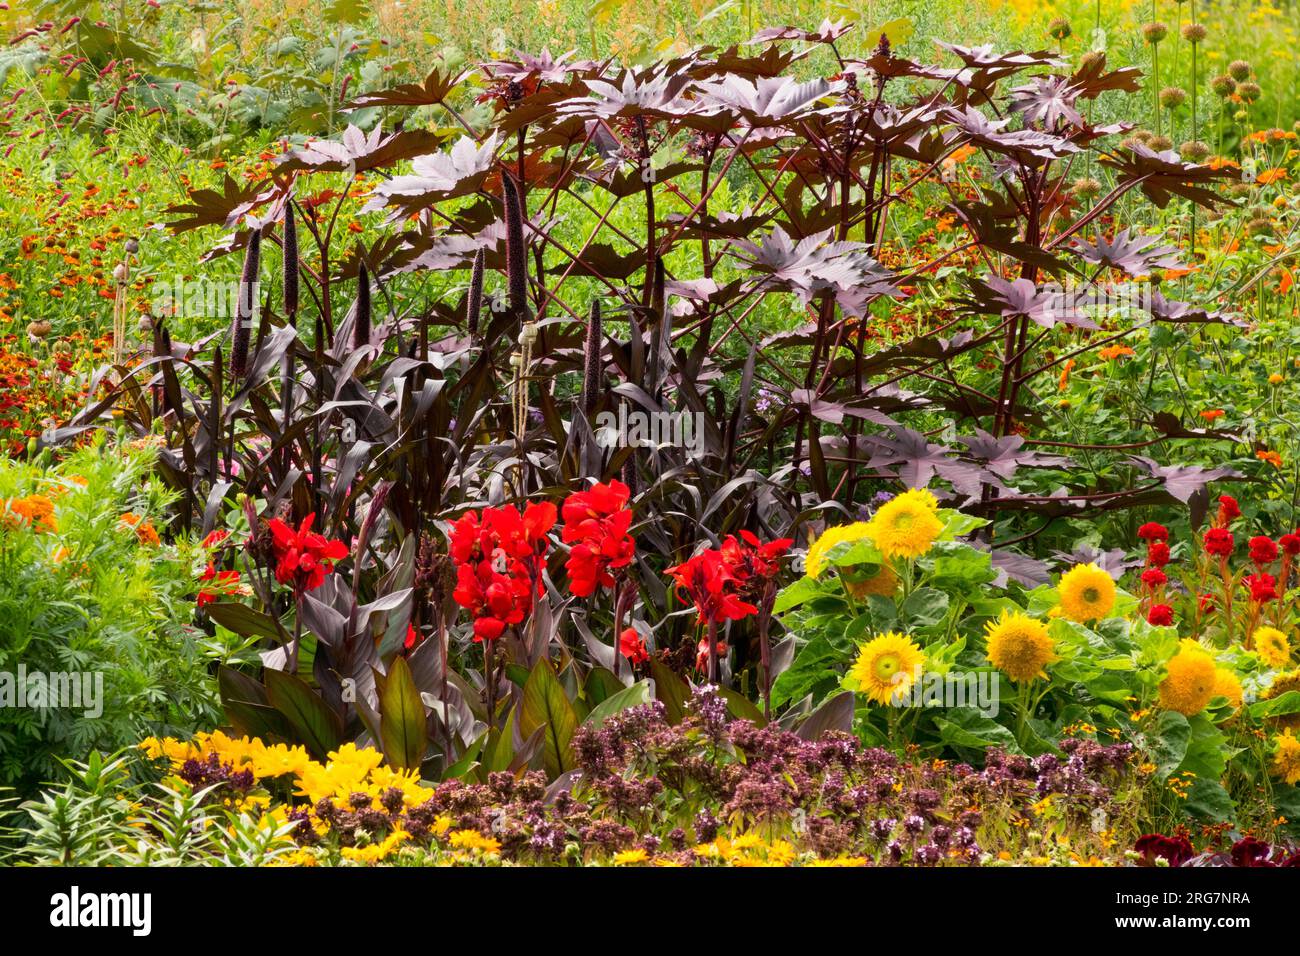 Farbenfrohe Blumen Garten grenzt an einjährige und mehrjährige Pflanzen Gelb, Purple Red Canna Sonnenblumen Rizinusölmühle in einer Gartenszene Stockfoto